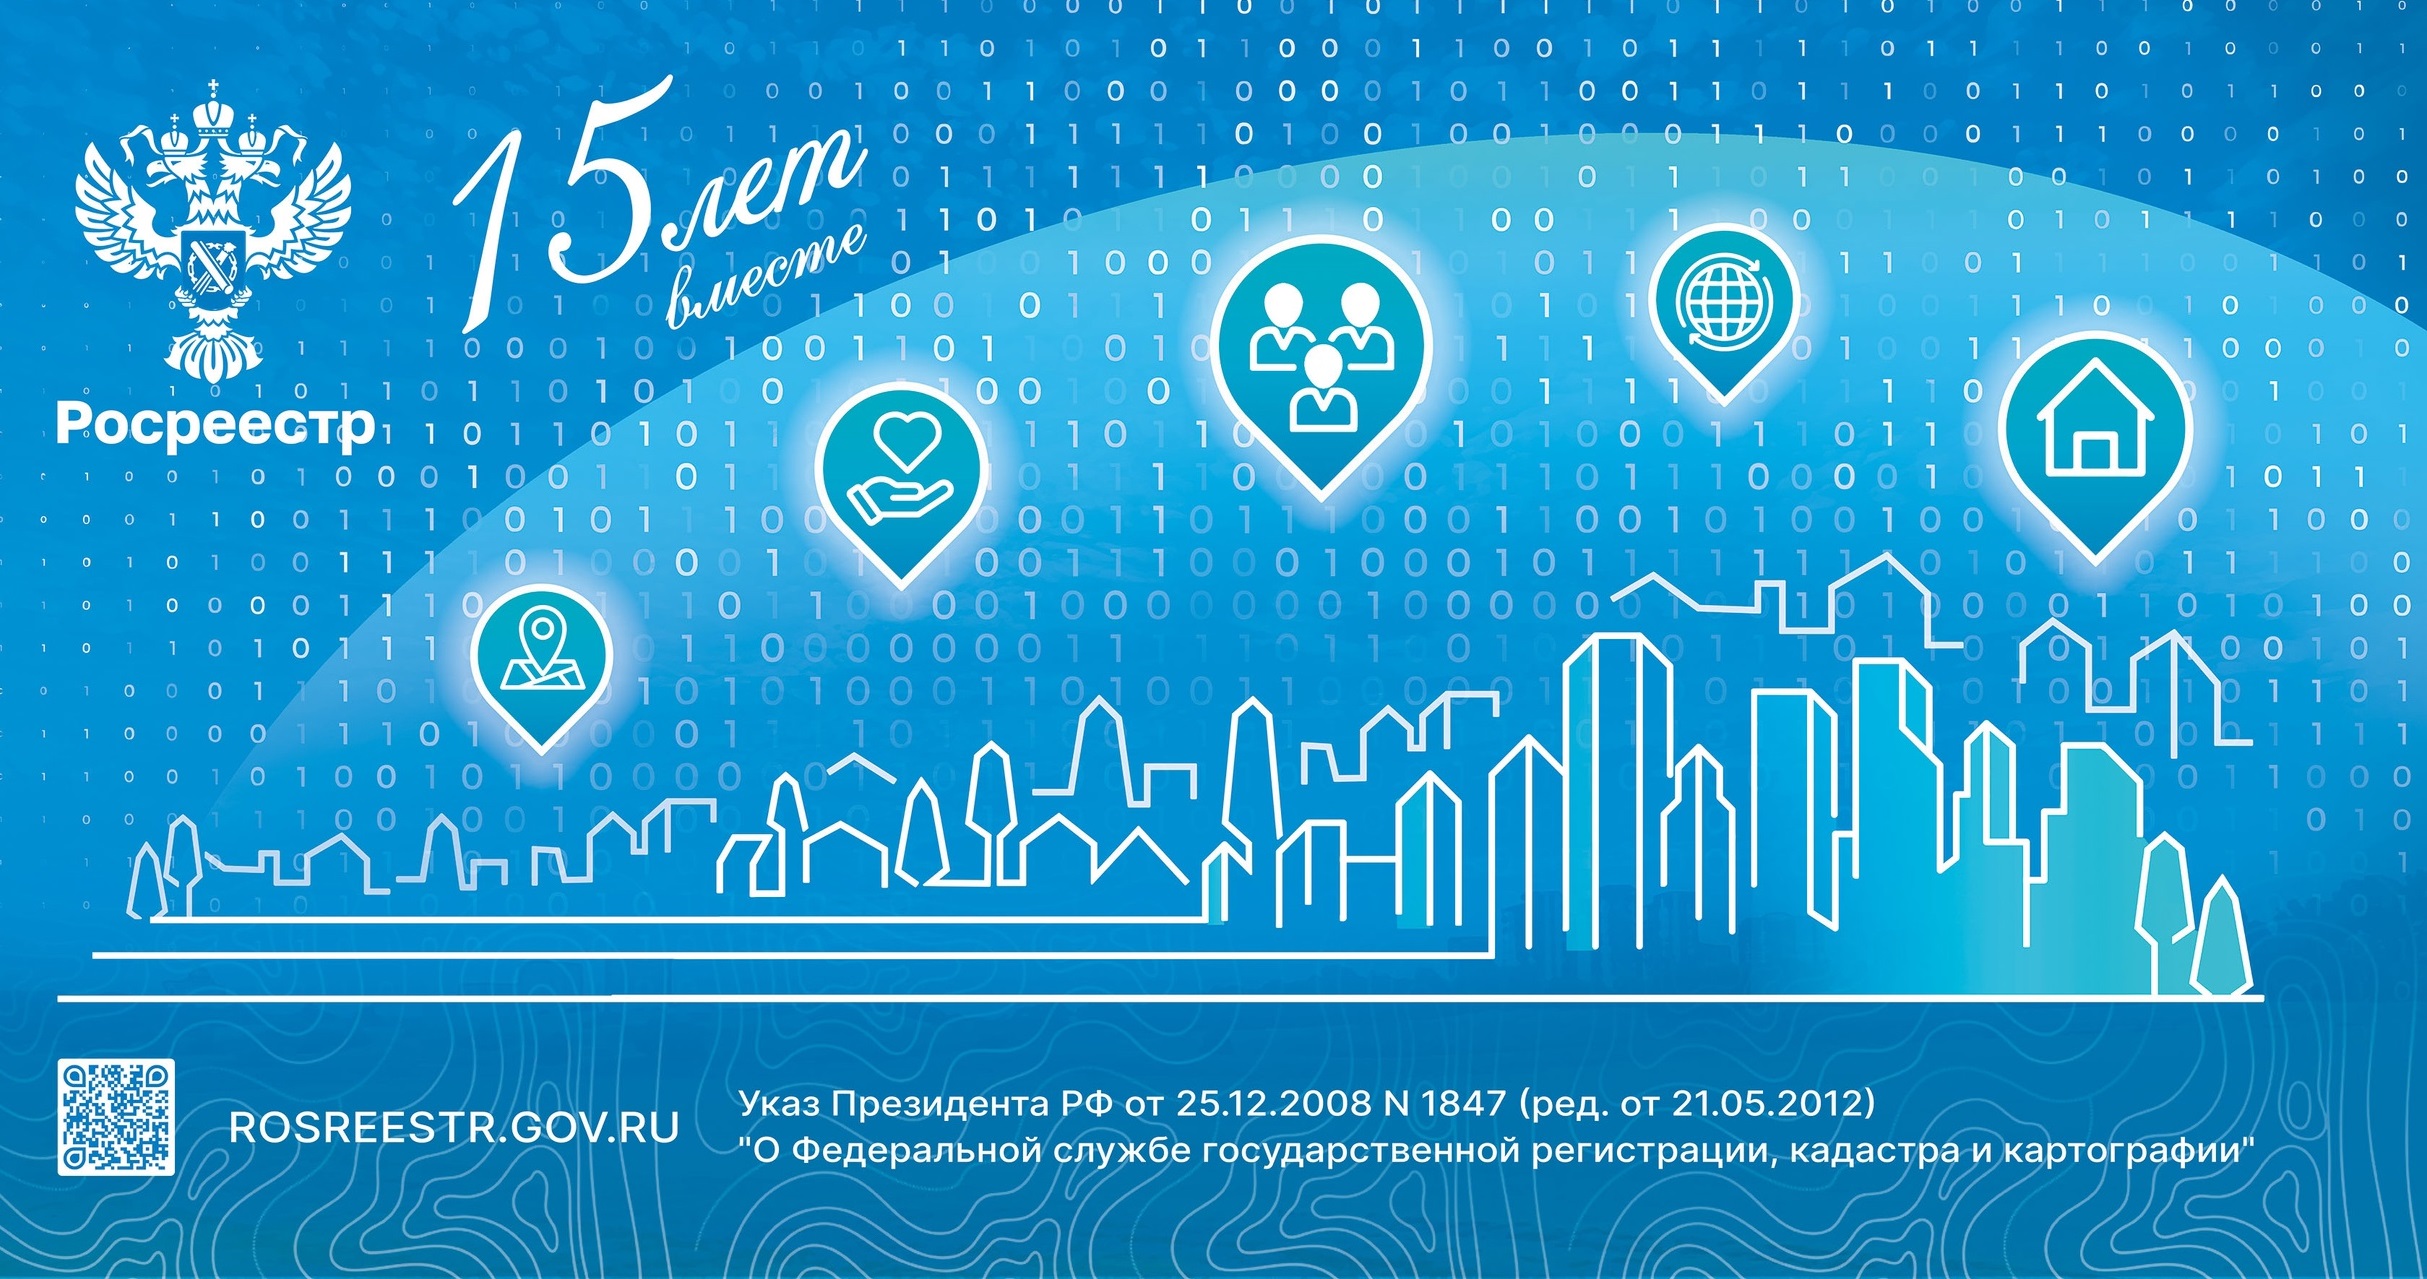 В декабре Управление Росреестра по Белгородской области отметит 15-летие со дня создания ведомства!.